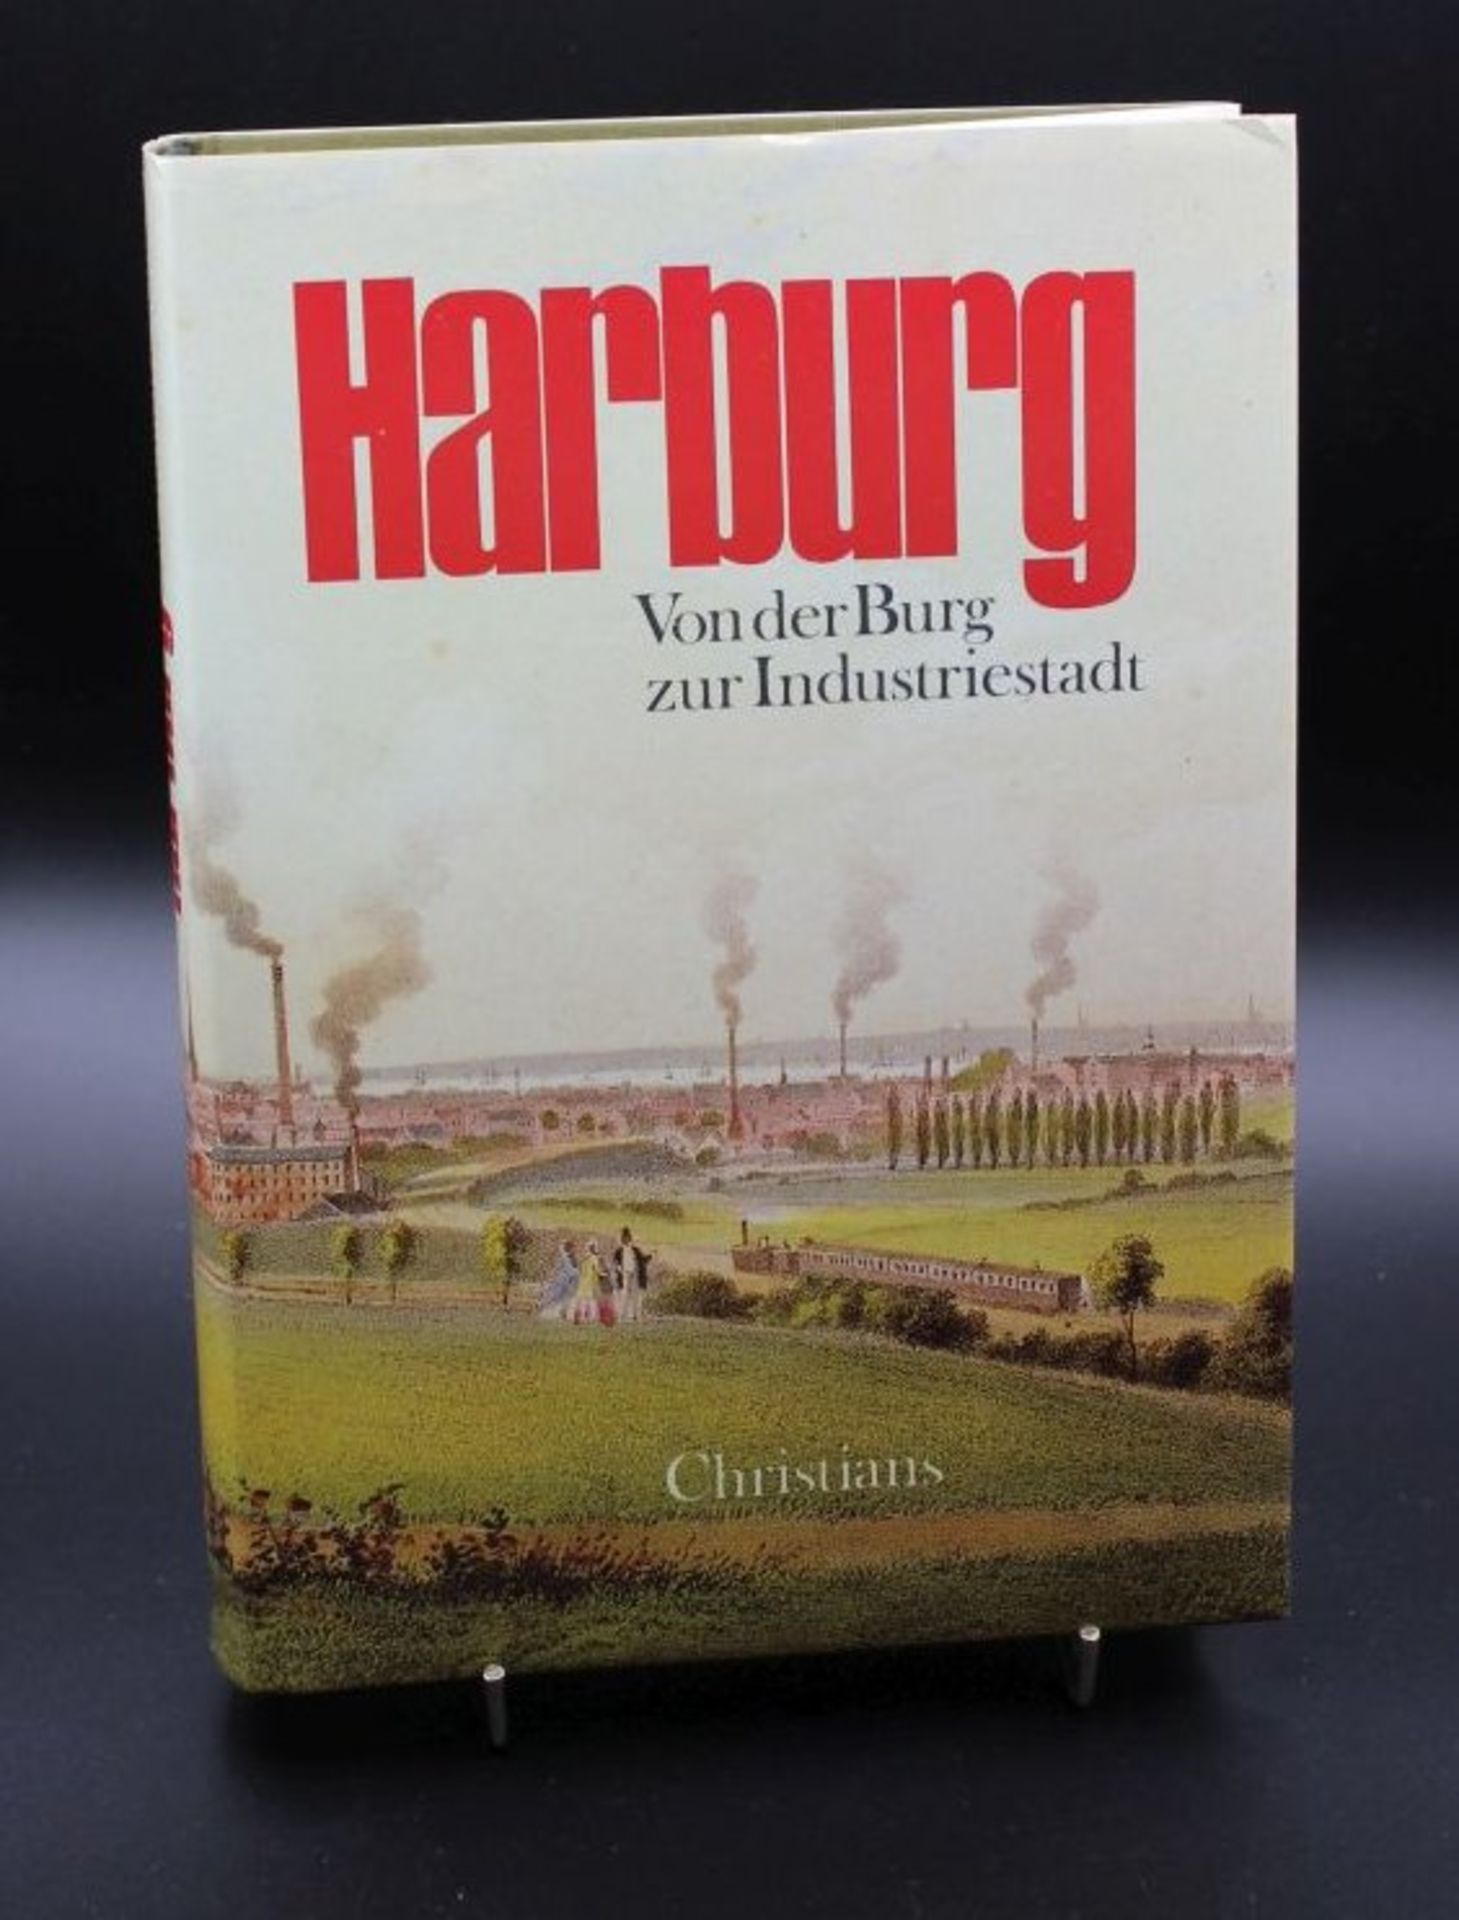 Harburg- von der Burg zur Industriestadt, Hamburg 1988.